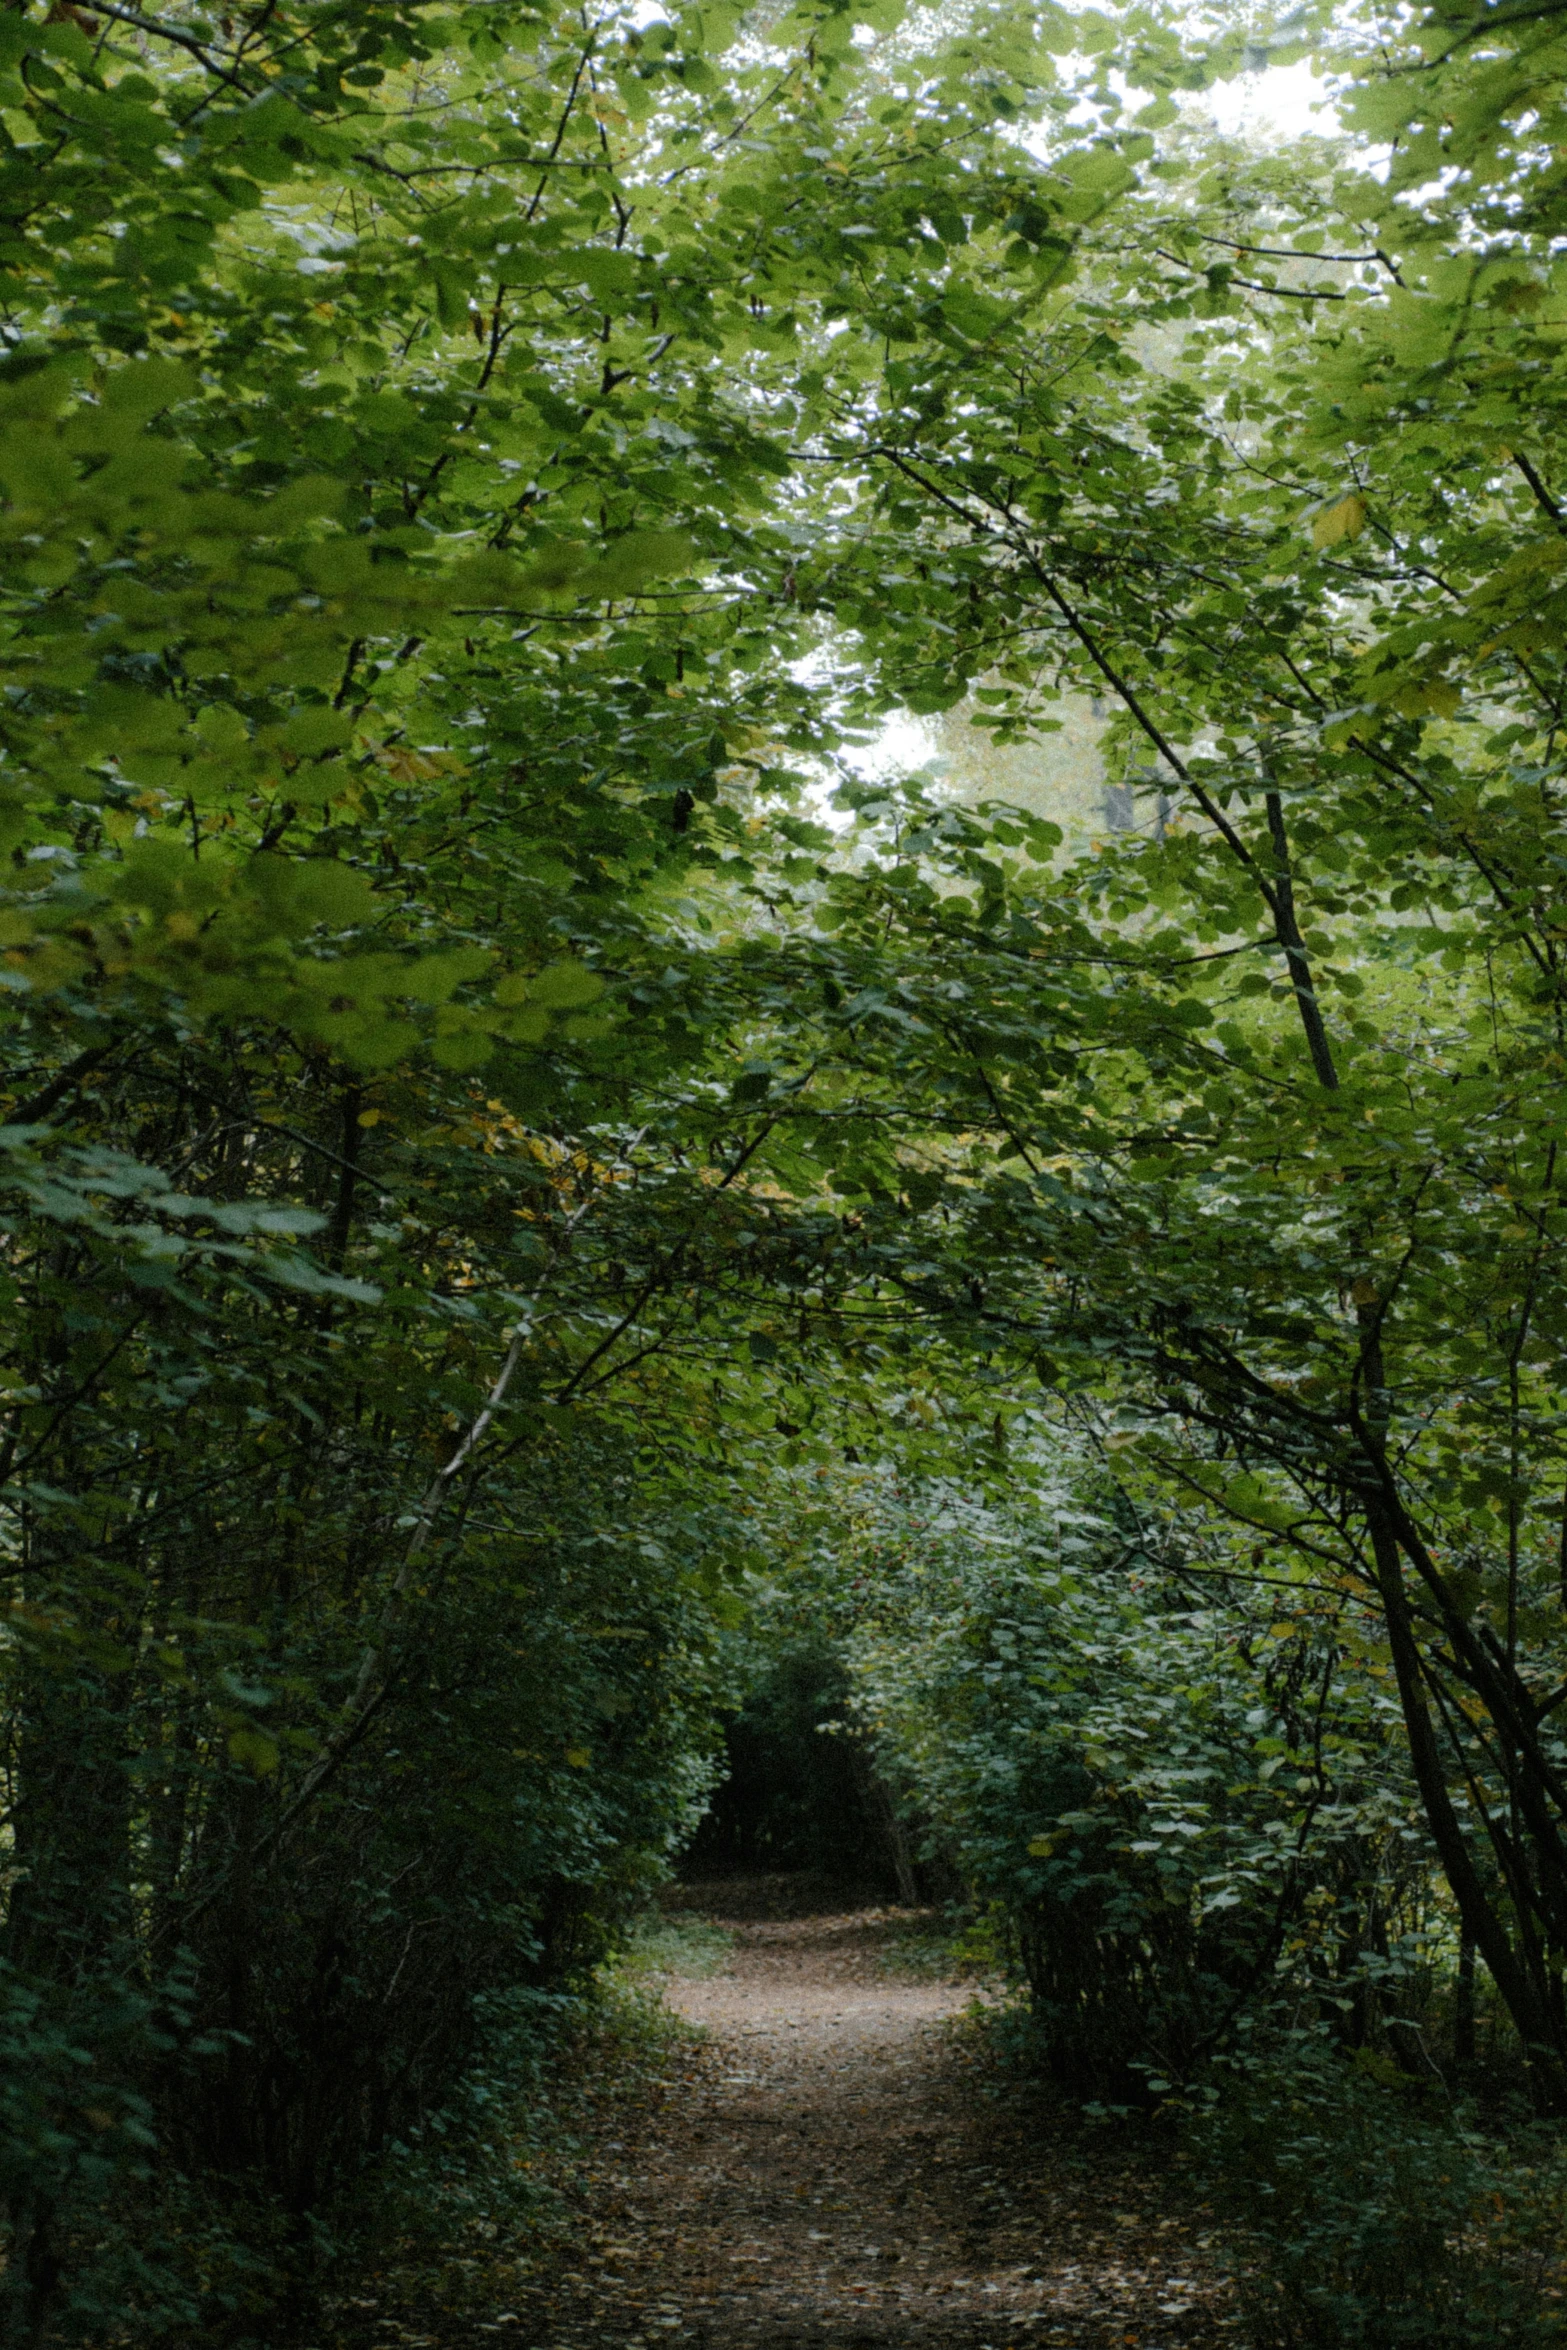 a path leads through lush green foliage